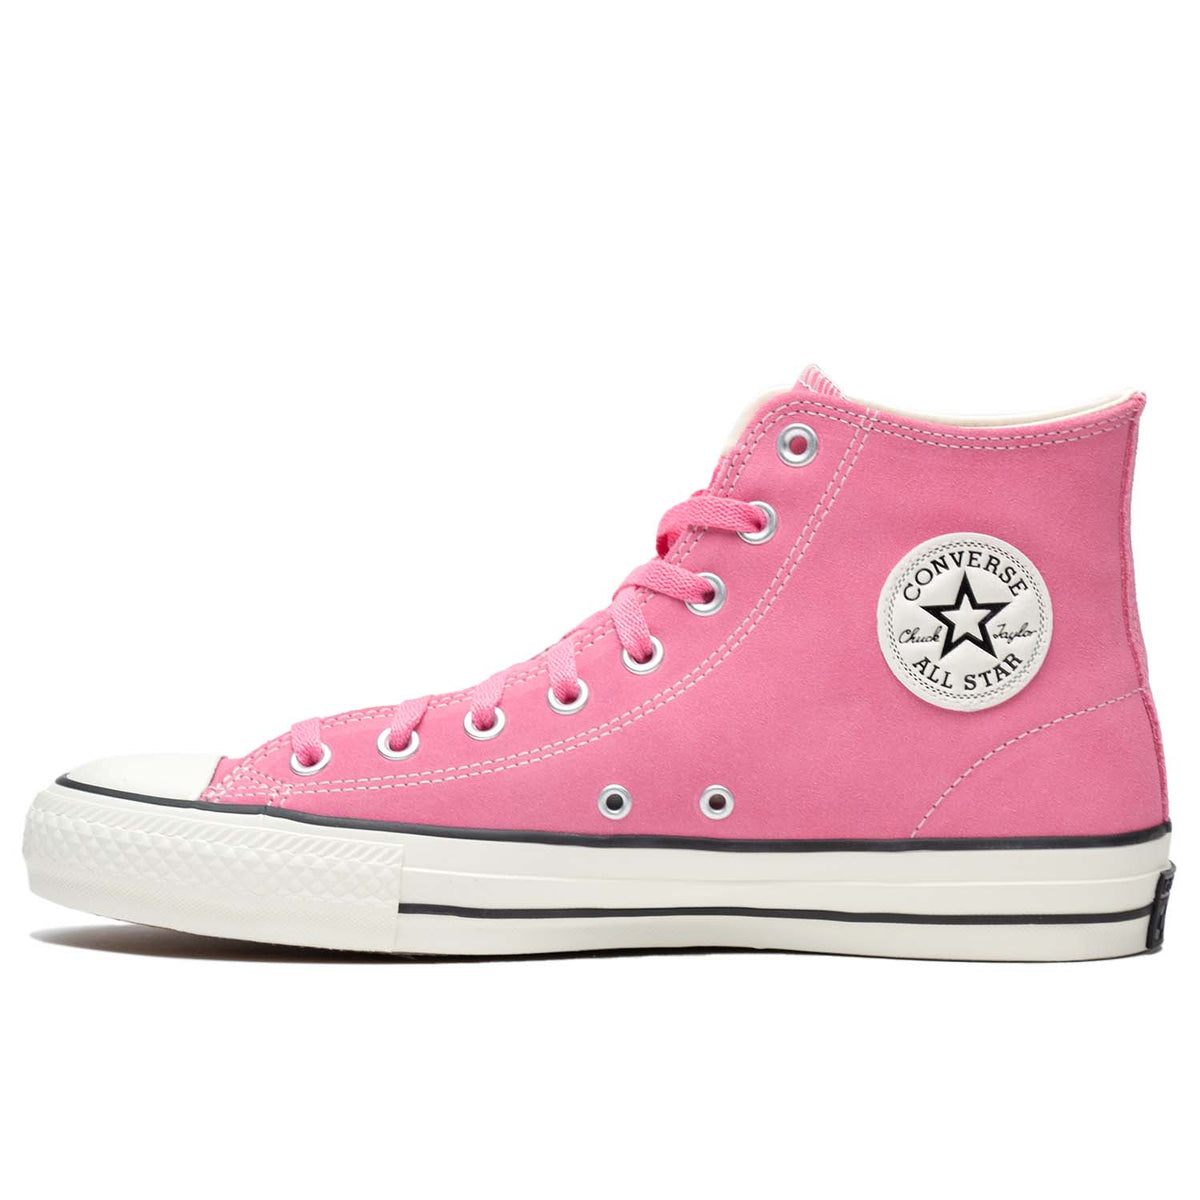 Converse - Chuck Taylor All Star Pro Hi - Oops Pink/Egret/Black